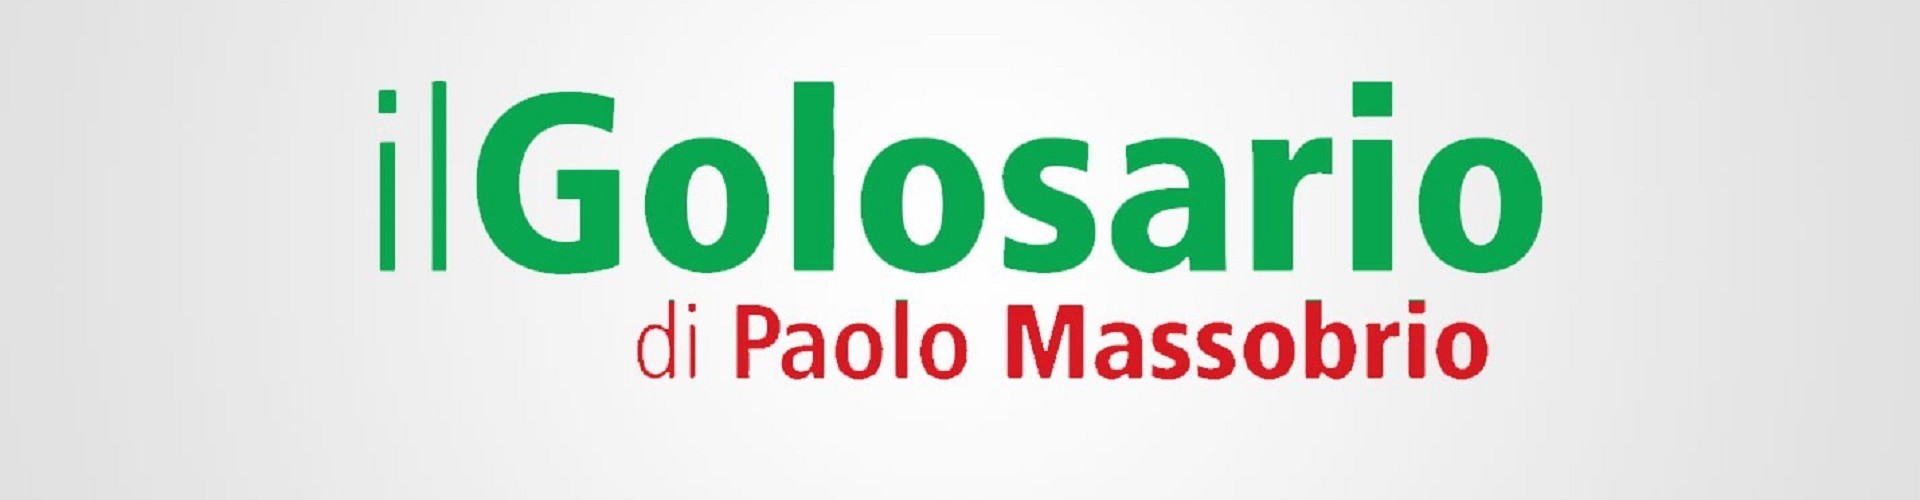 Il Golosario di Paolo Massobrio talk about us